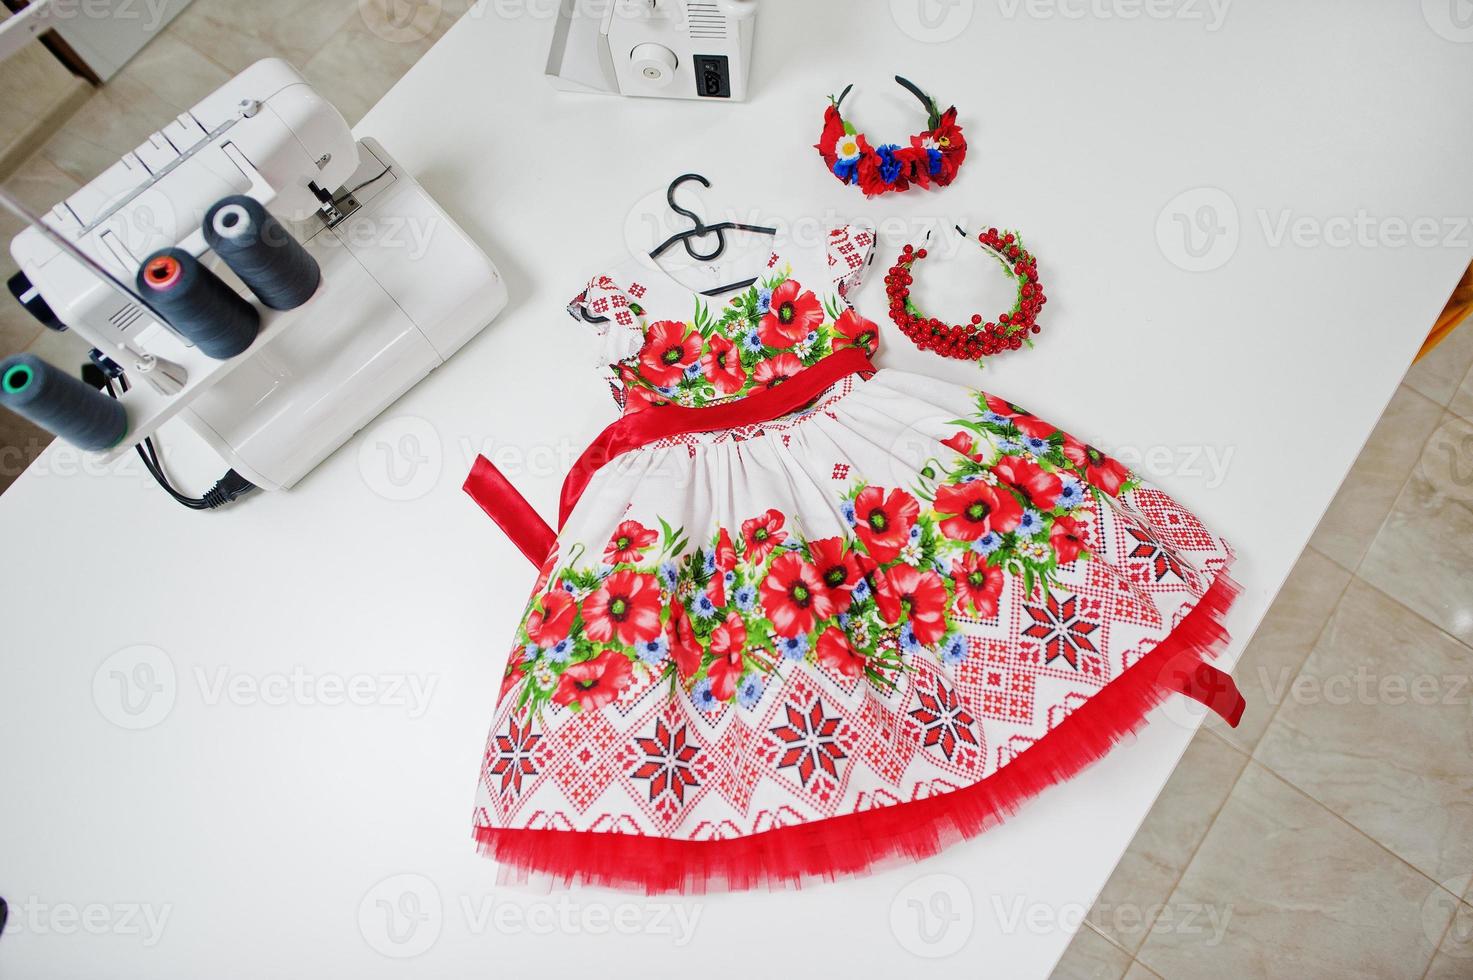 disfraz de niña hecho a carnaval infantil en la oficina de costurera en el lugar de trabajo. 12002469 Foto de stock en Vecteezy